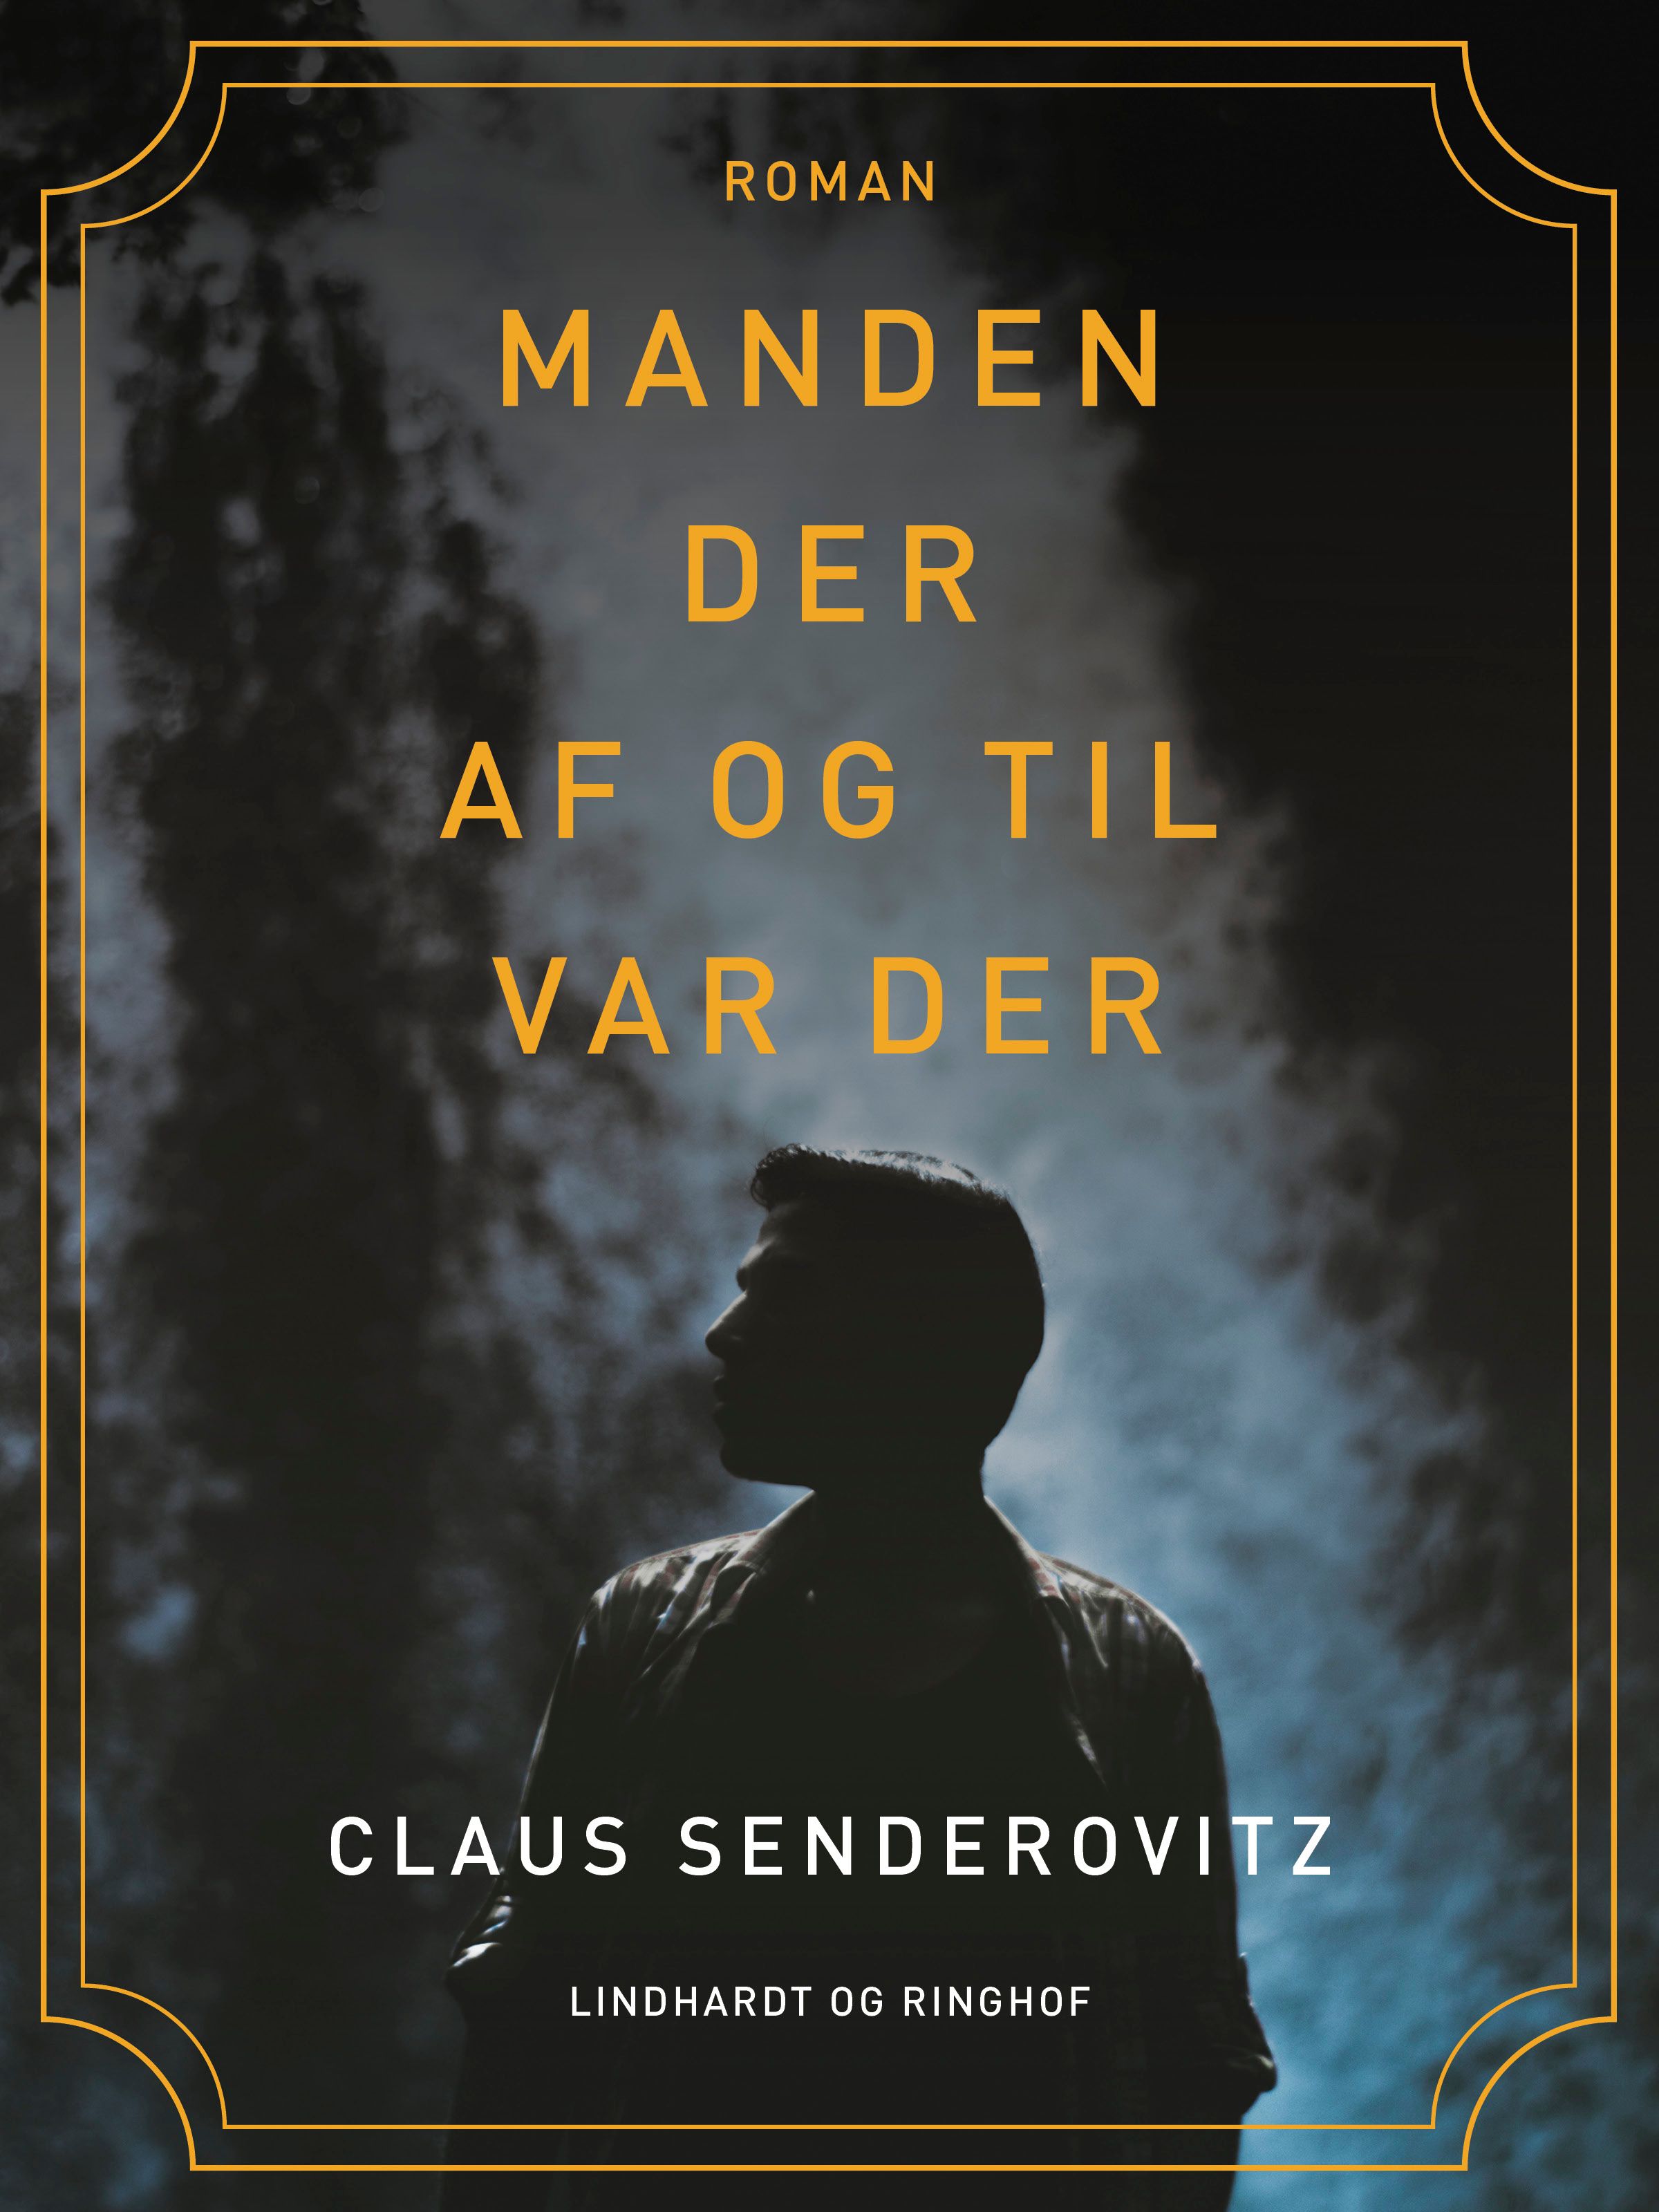 Manden der af og til var der, eBook by Claus Senderovitz